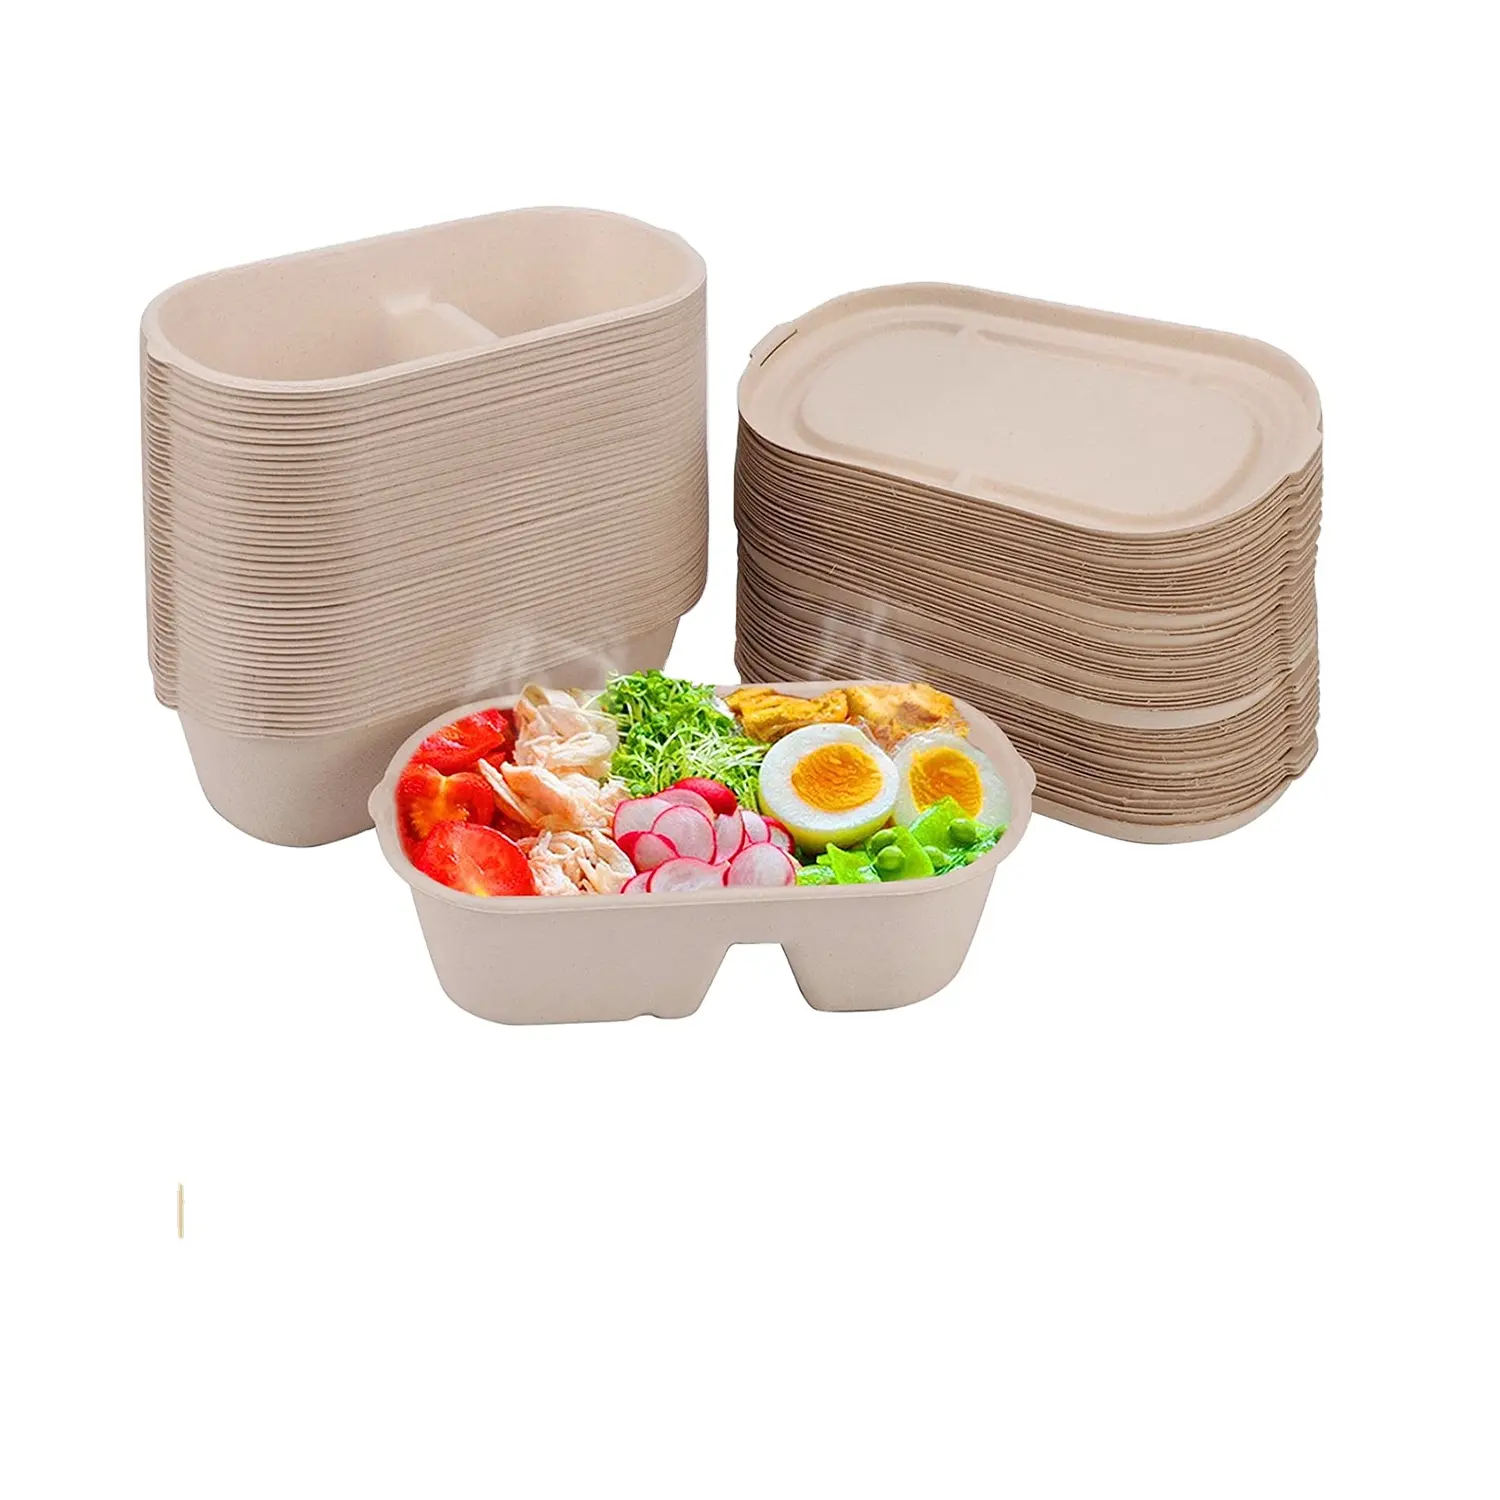 Contenitore ecologico per la preparazione dei pasti contenitori per alimenti con coperchi usa e getta Bento Box per il pranzo scatola per cibo da asporto da cucina